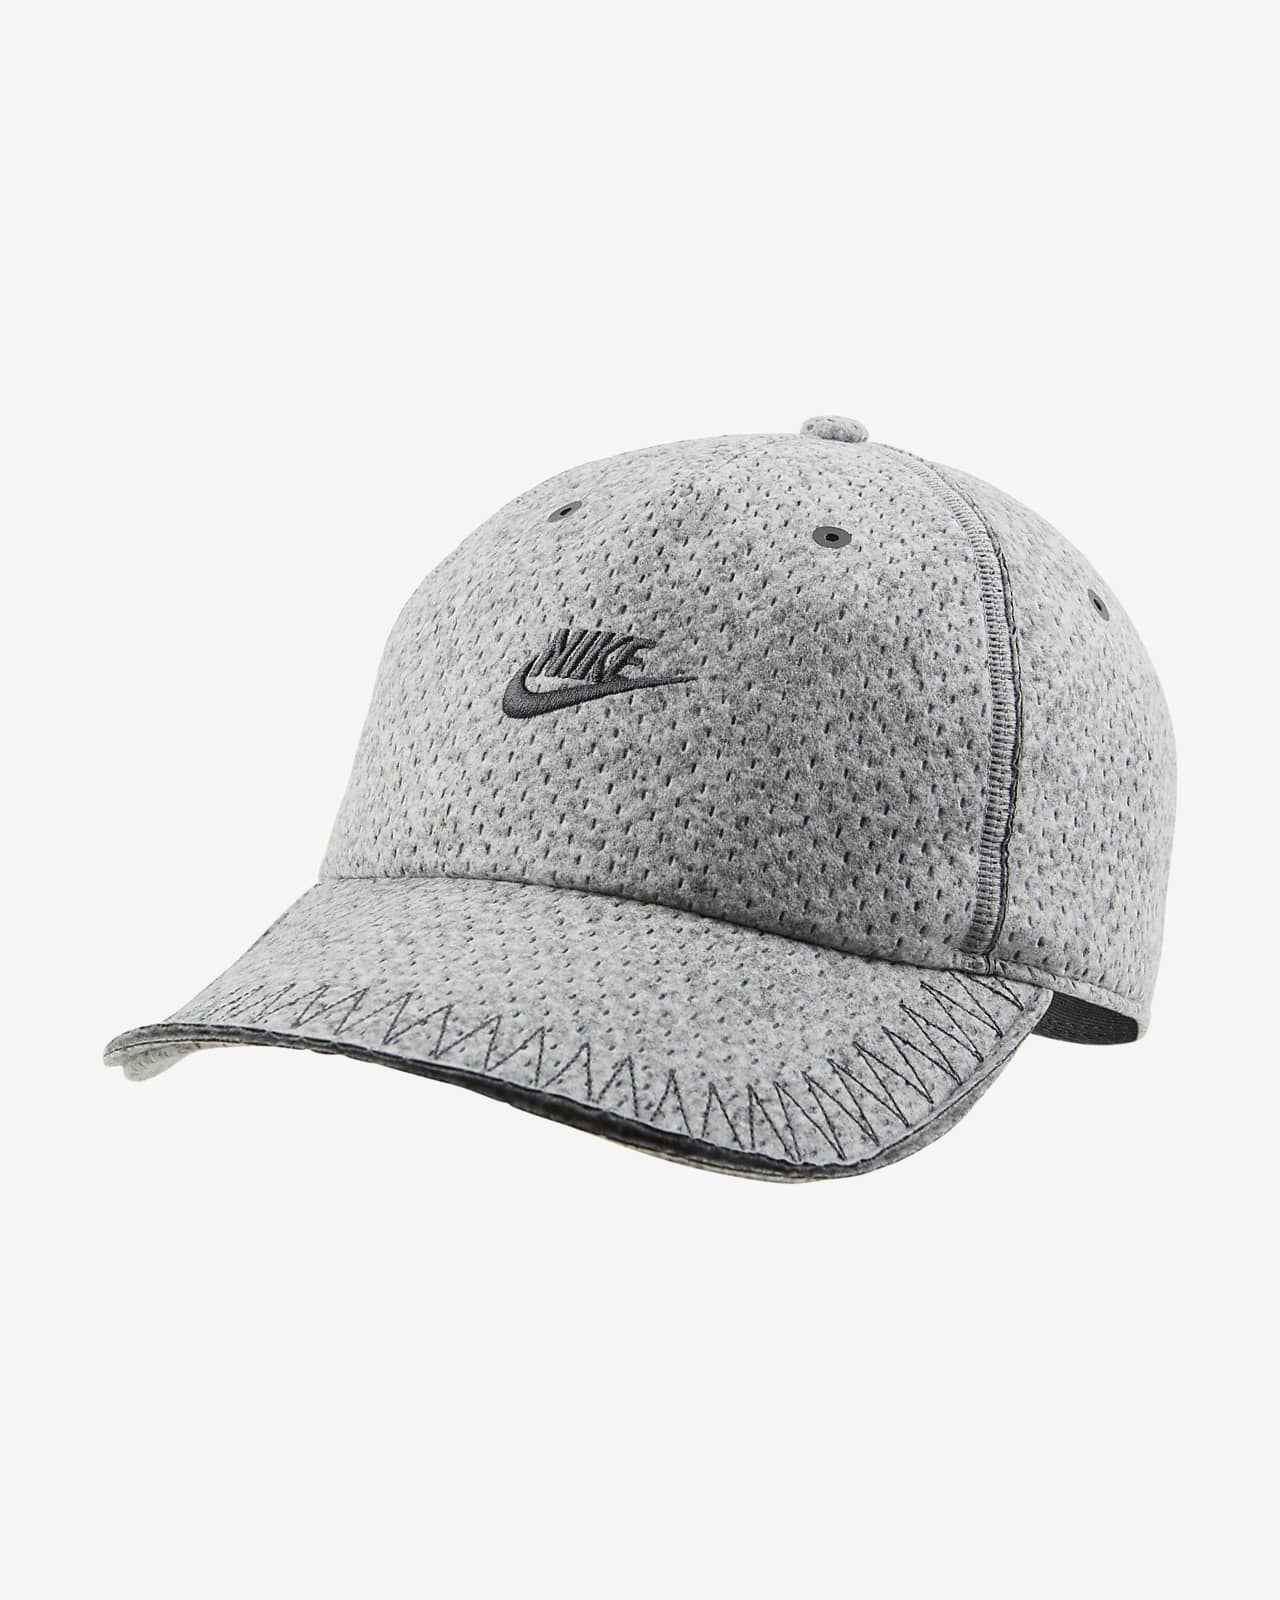 Nike Forward Cap 弧形鴨舌軟帽